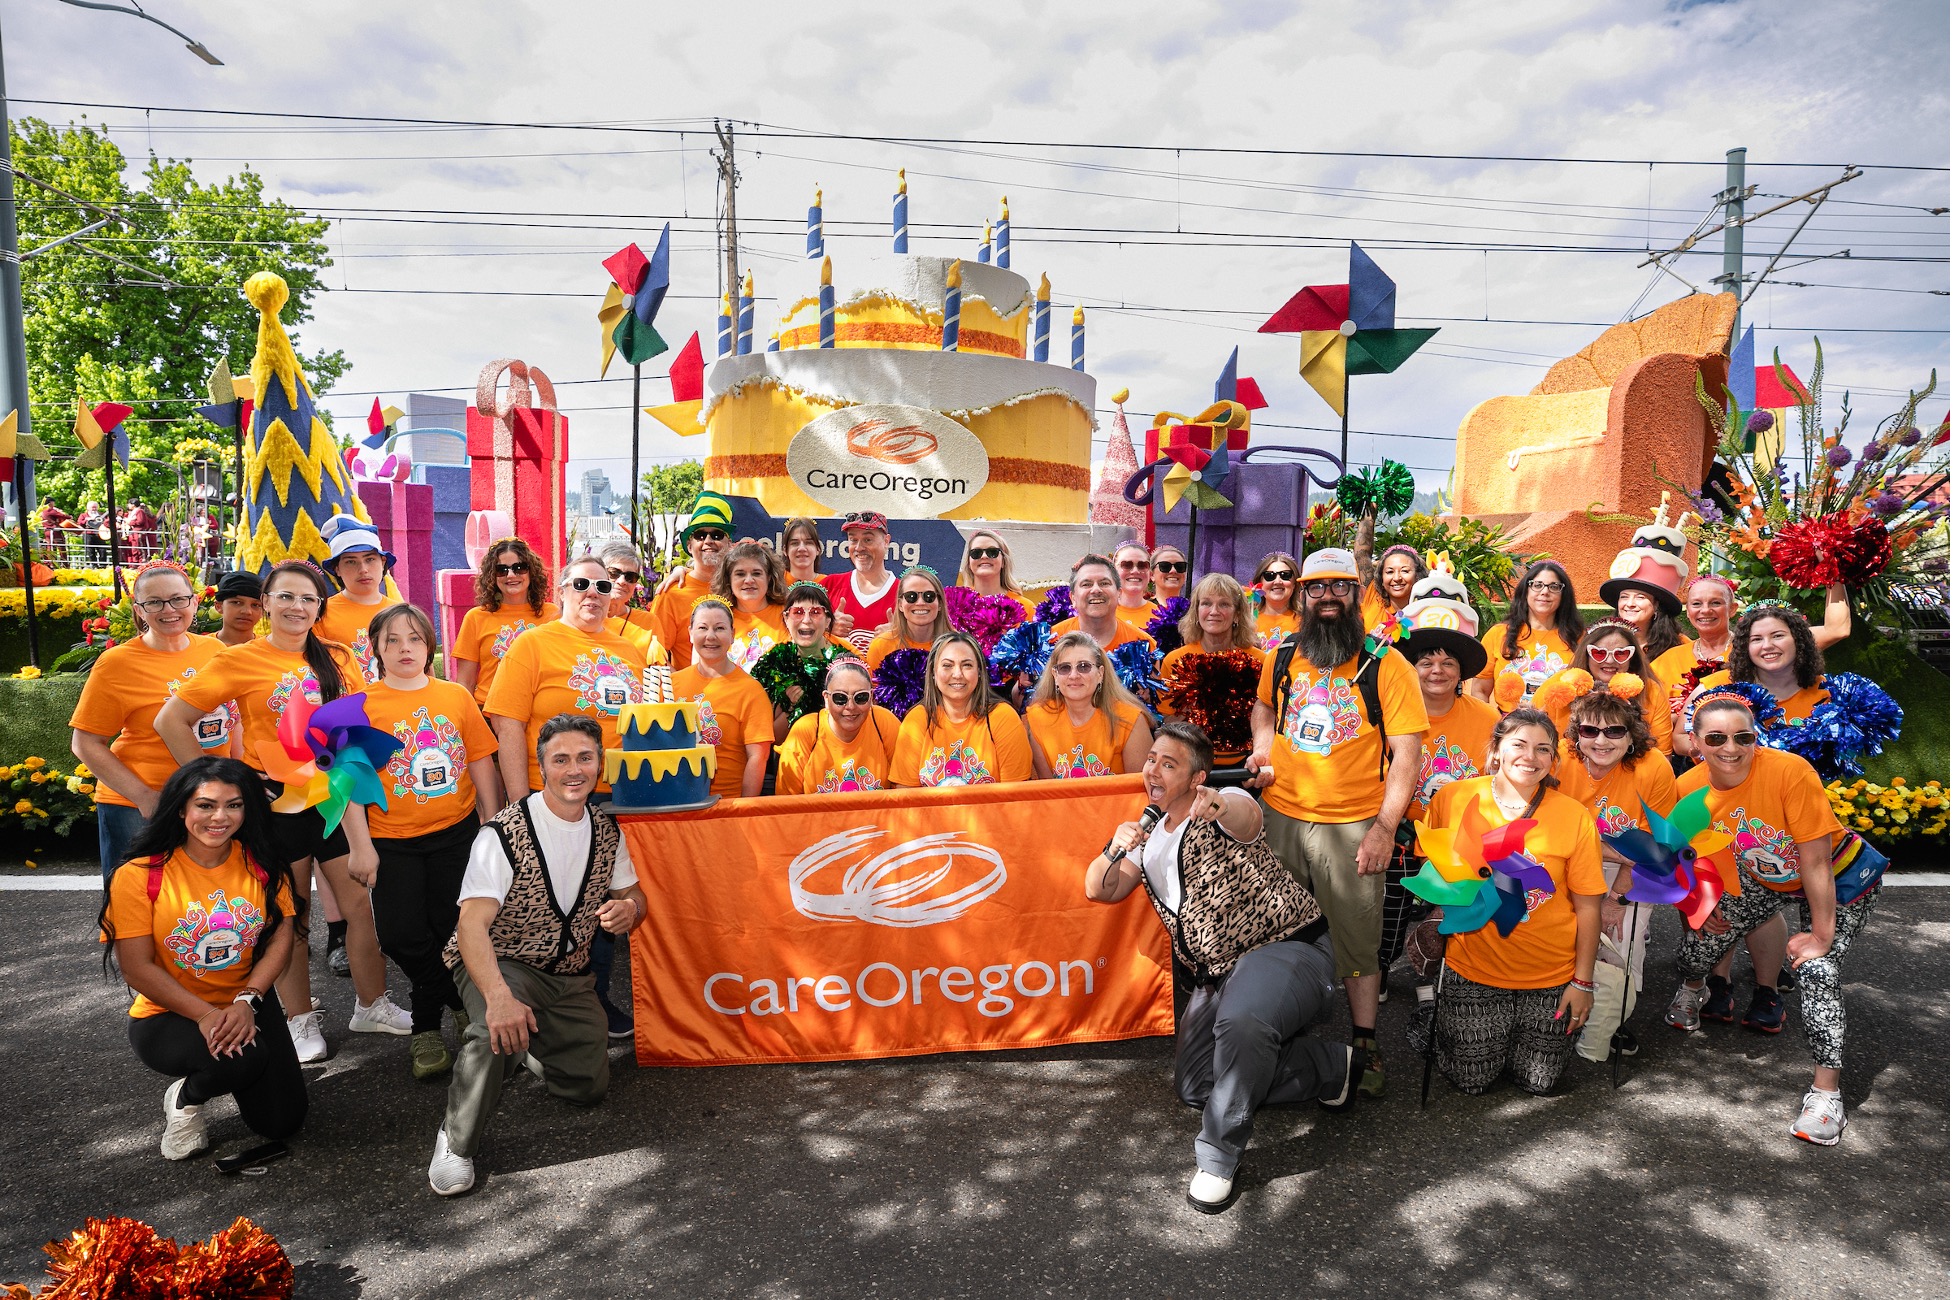 Un grupo de personas con camisetas naranjas de CareOregon reunidas frente a una carroza con un gran pastel de cumpleaños y un cartel que dice: "CarerOregon"